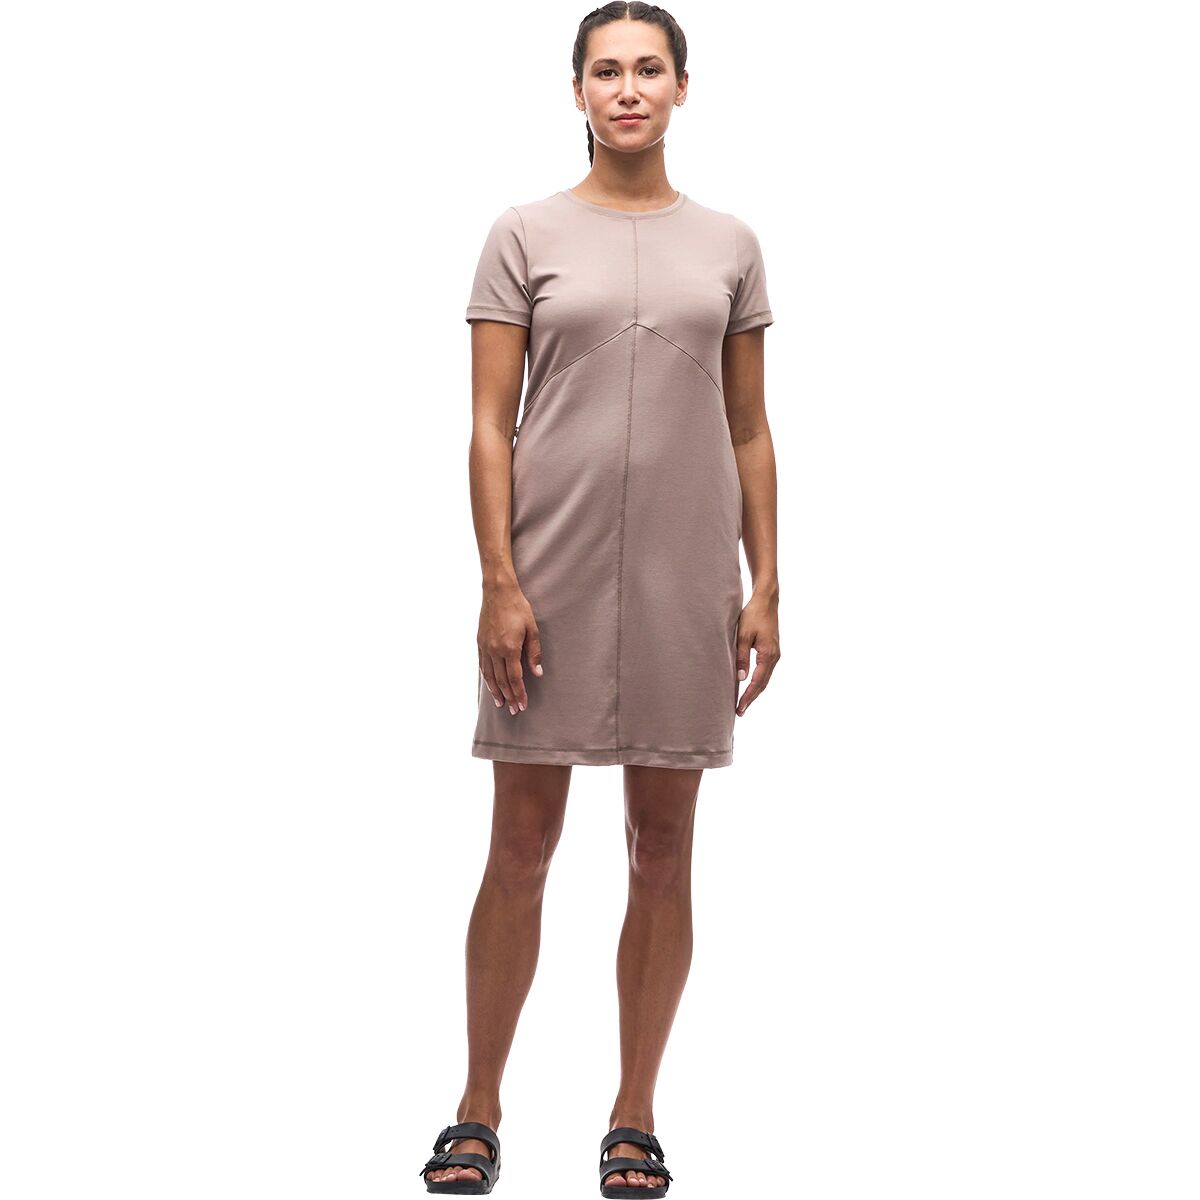 Kuiva III Dress - Women